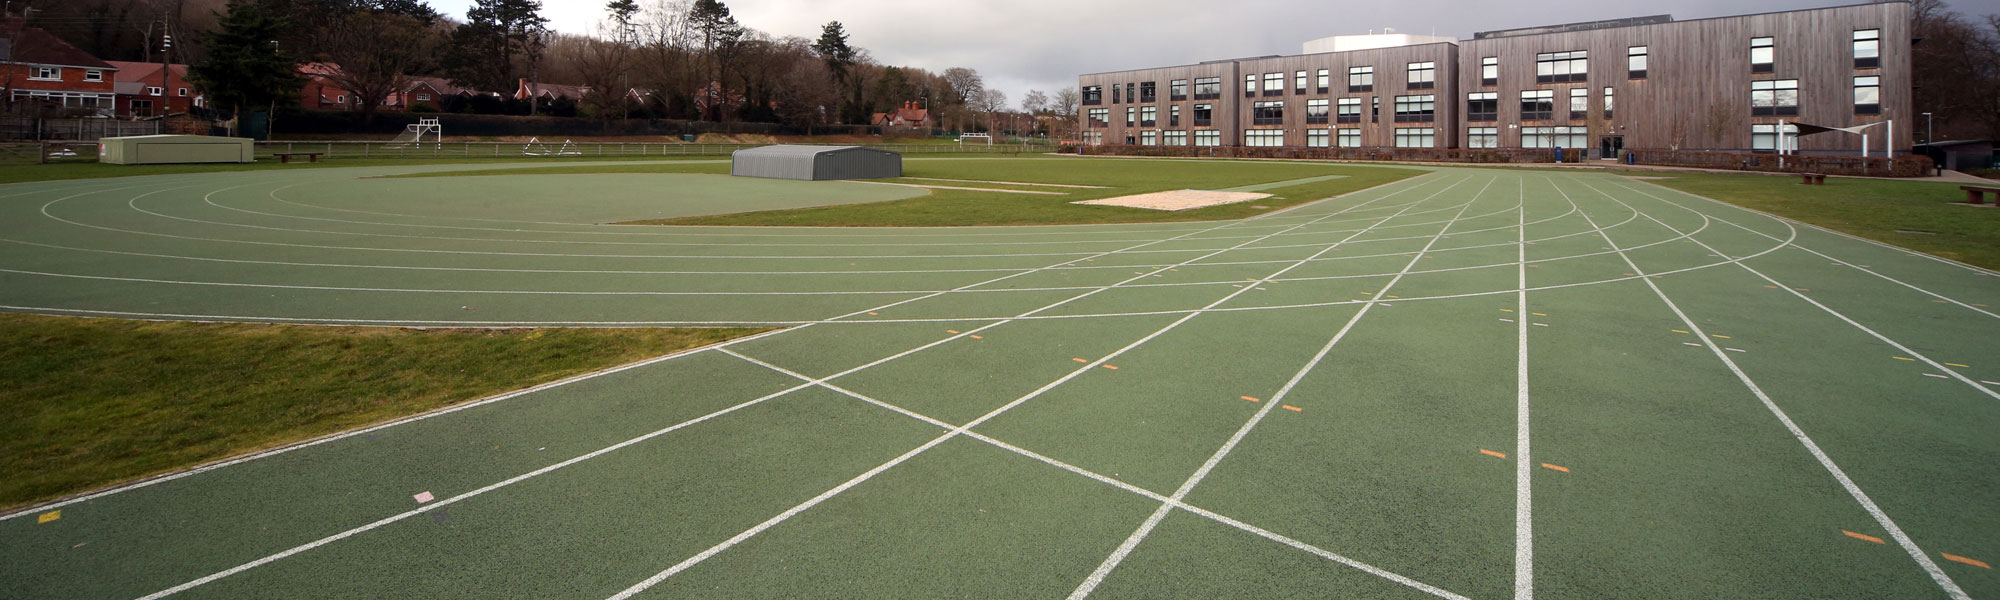 Outdoor school athletics track